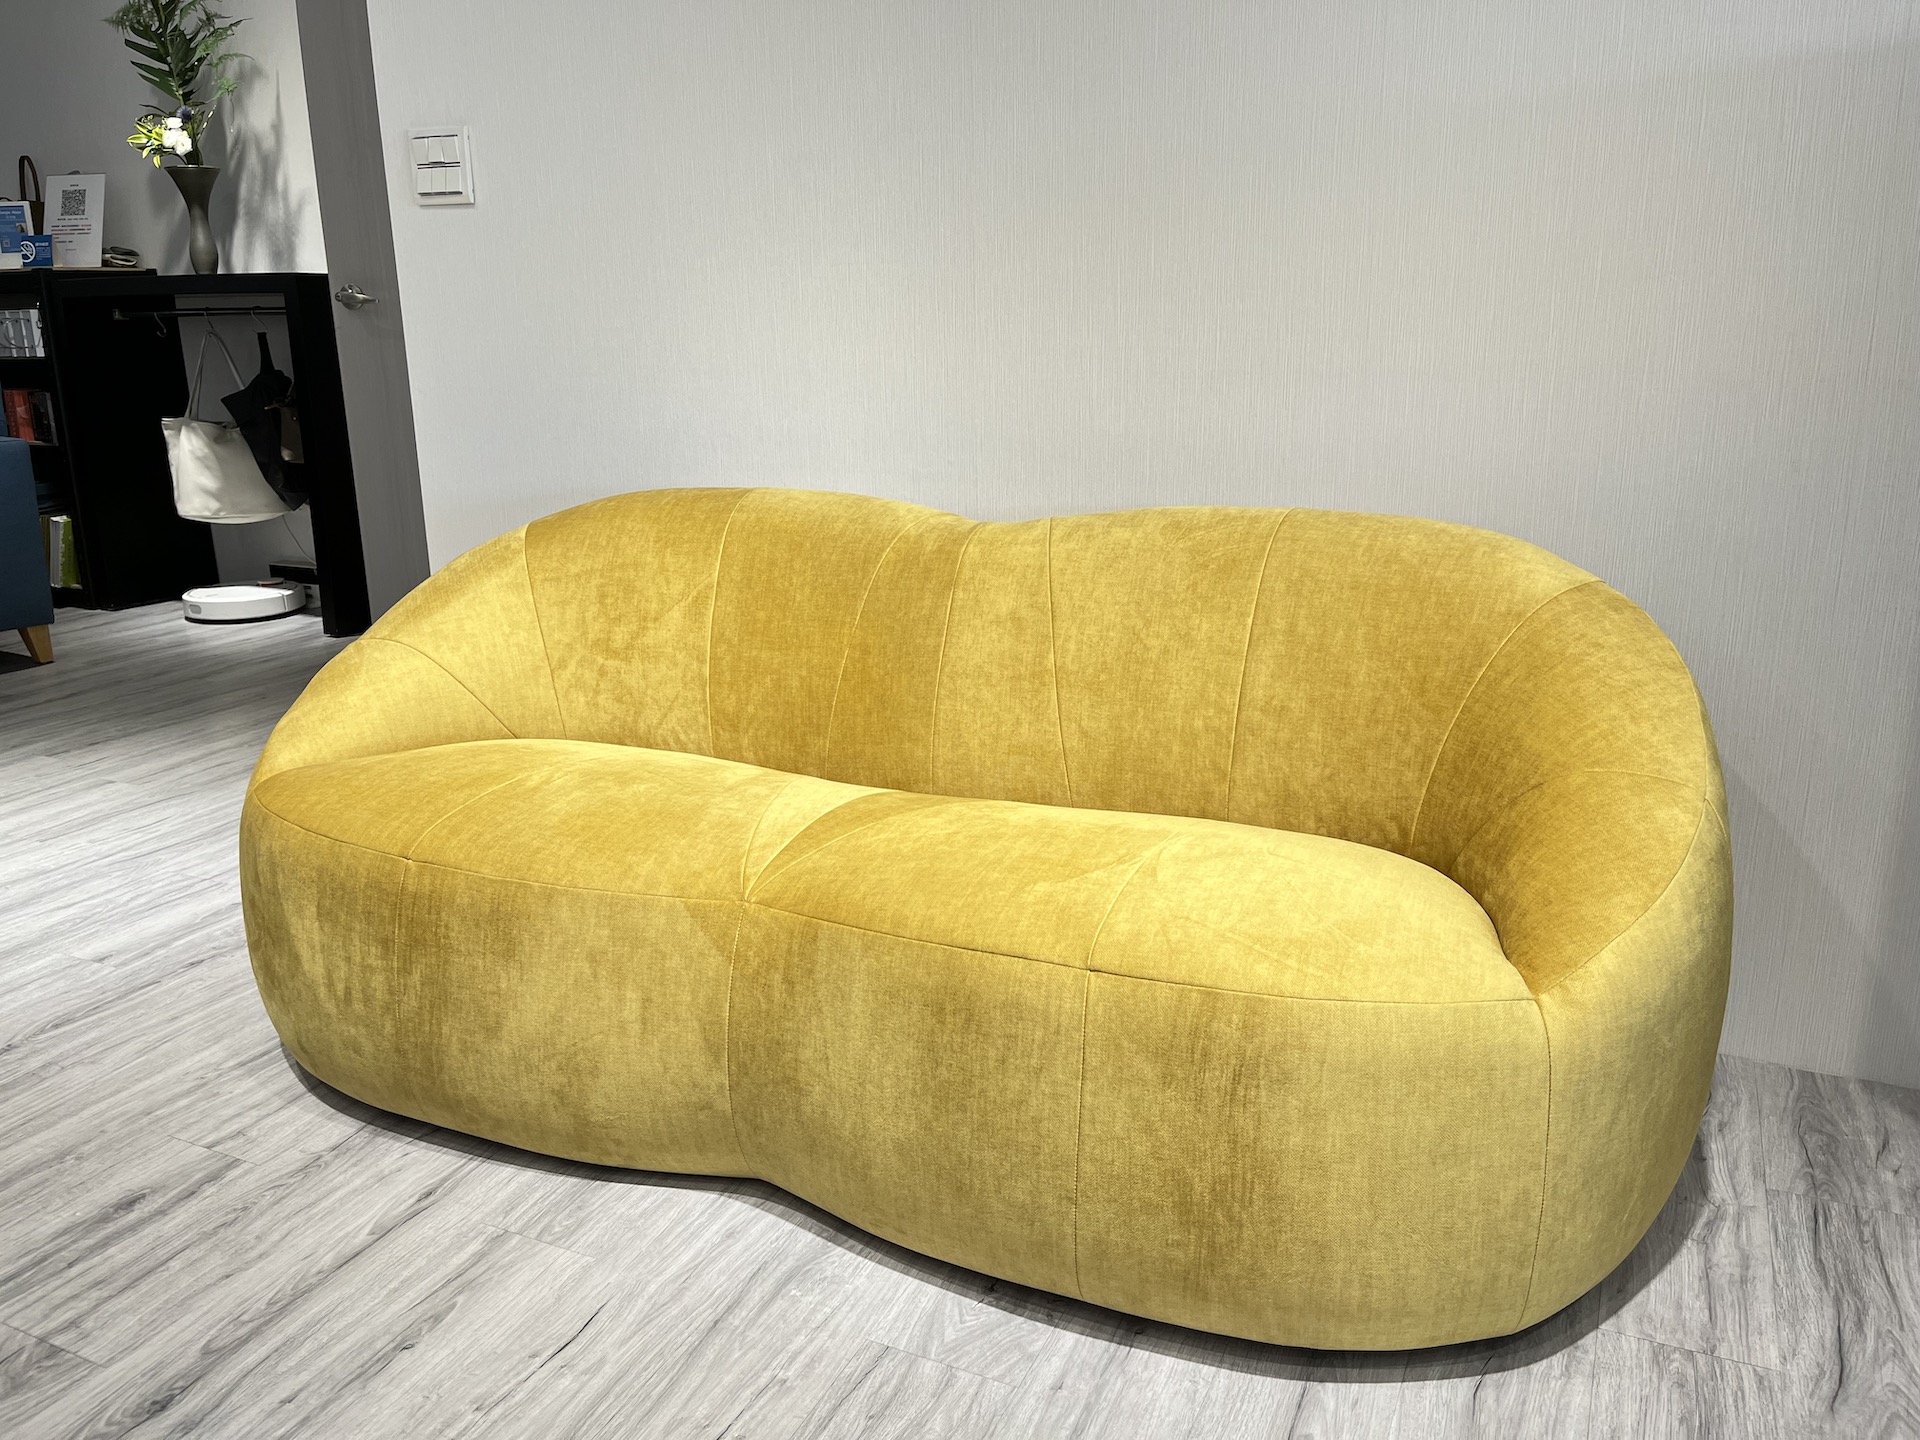 【客戶案例分享】兩人弧形造型沙發製作